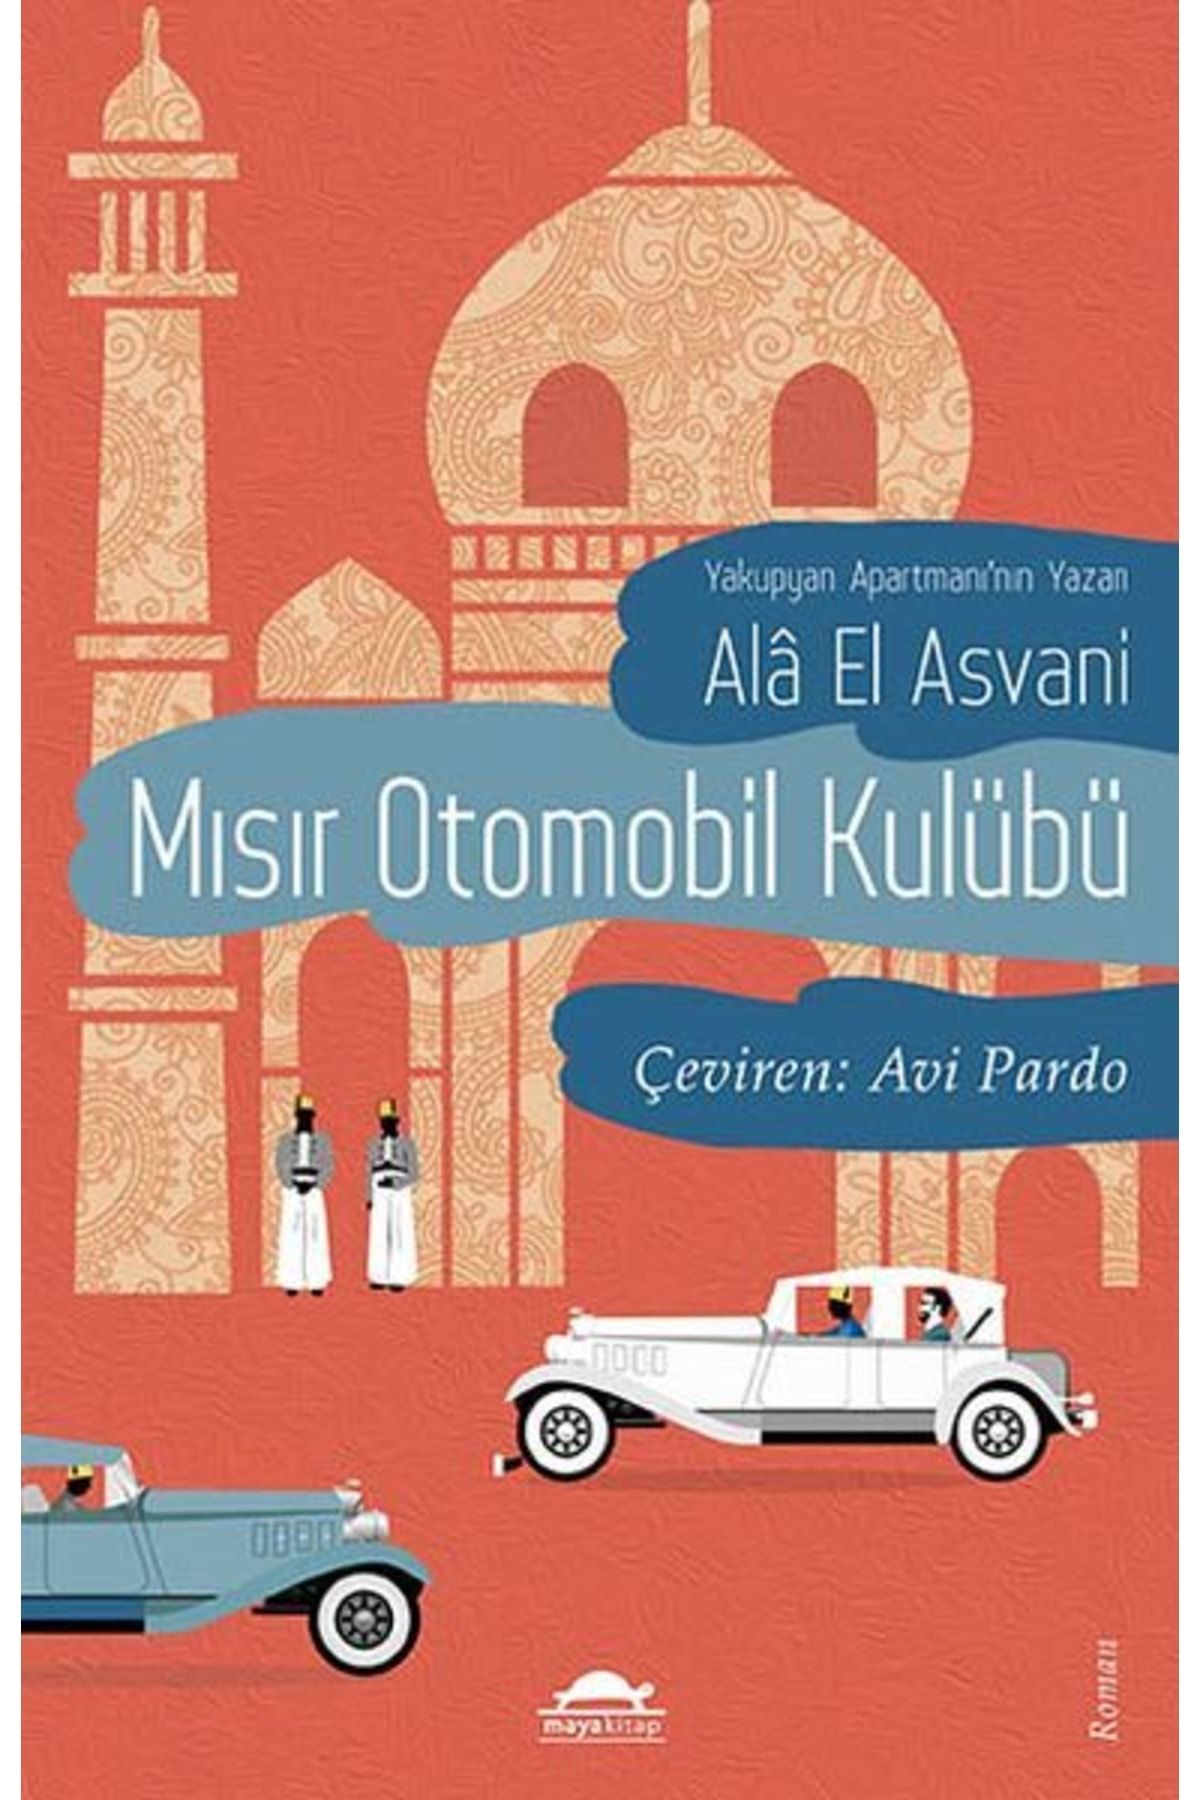 Maya Kitap Mısır Otomobil Kulübü, Alâ El Asvani, , Mısır Otomobil Kulübü Kitabı, 432 Sayfa